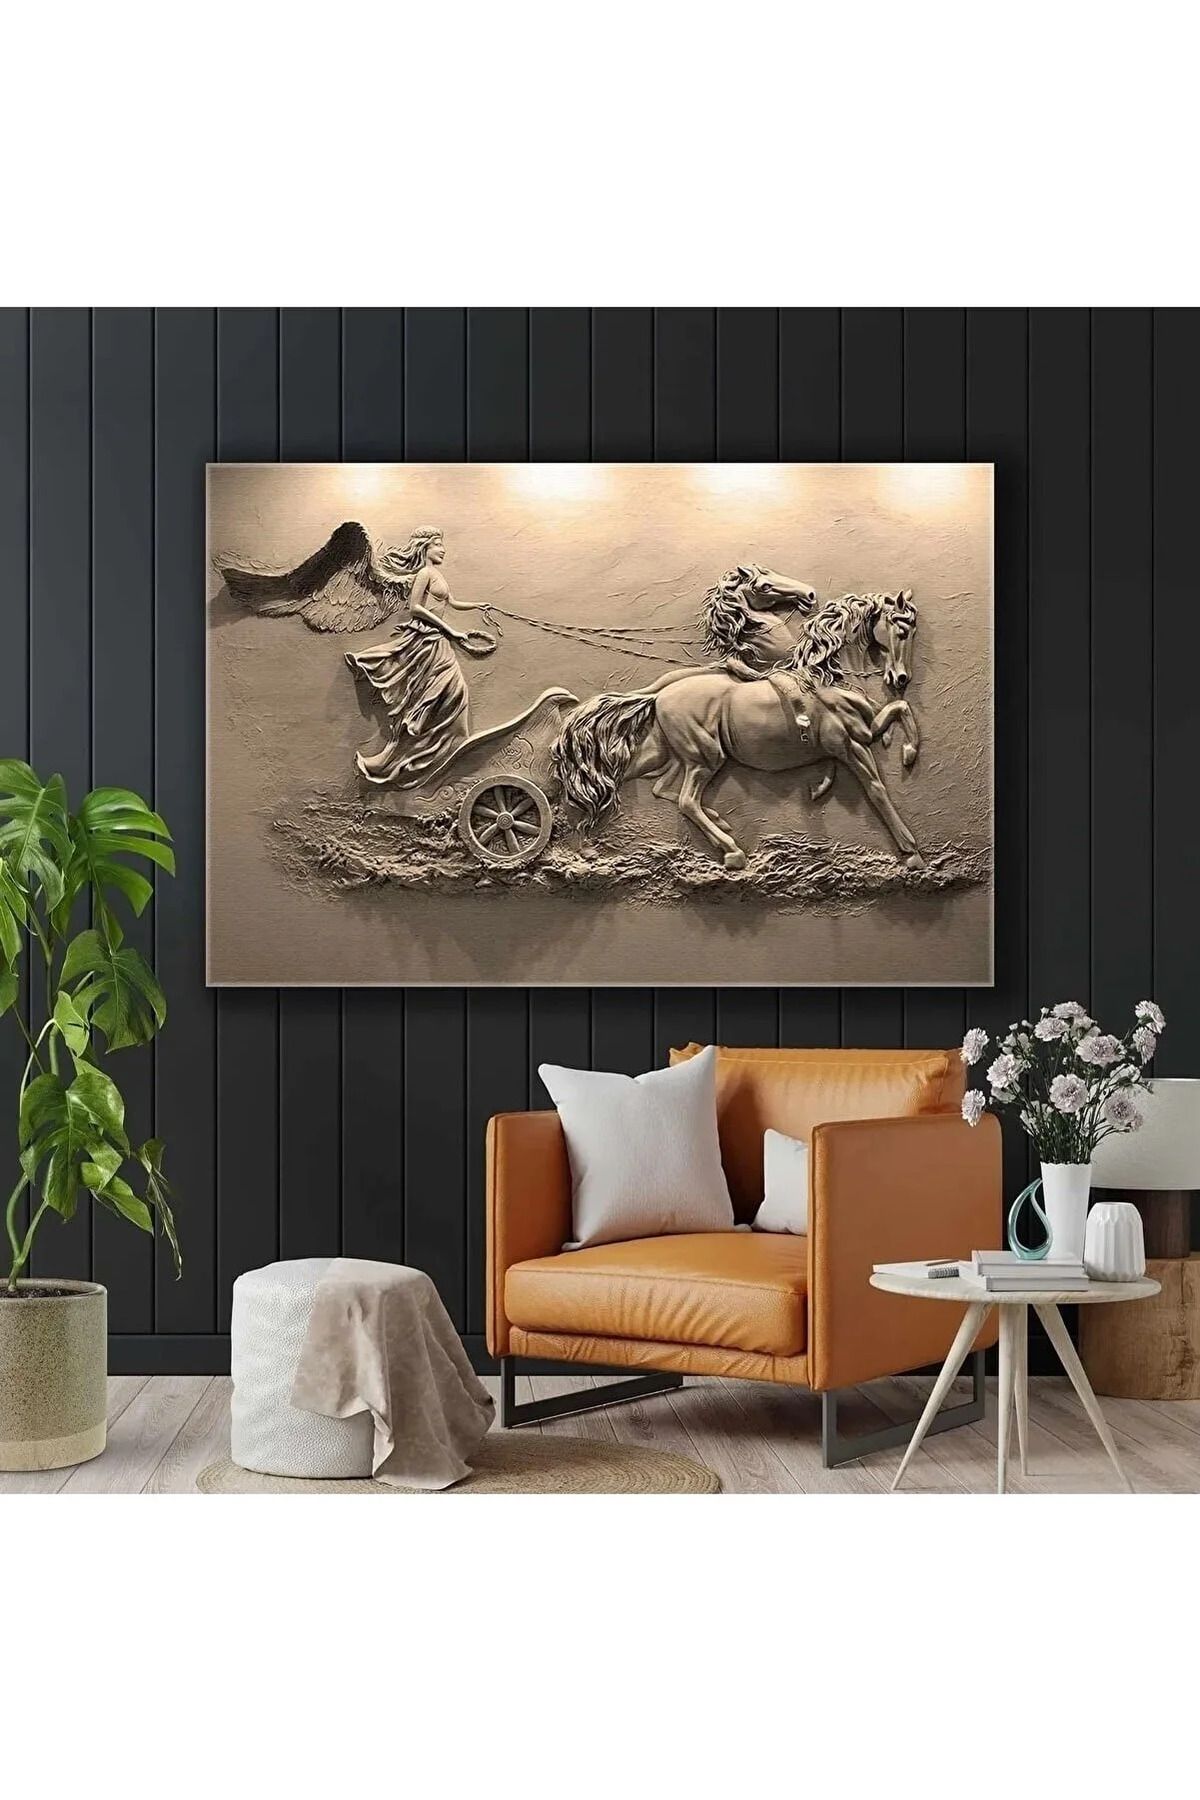 Genel Markalar At Arabası Süren Kanatlı Melek Sepya Hermes Tanrı Duvar Rölyef Heykel Kanvas Tablo